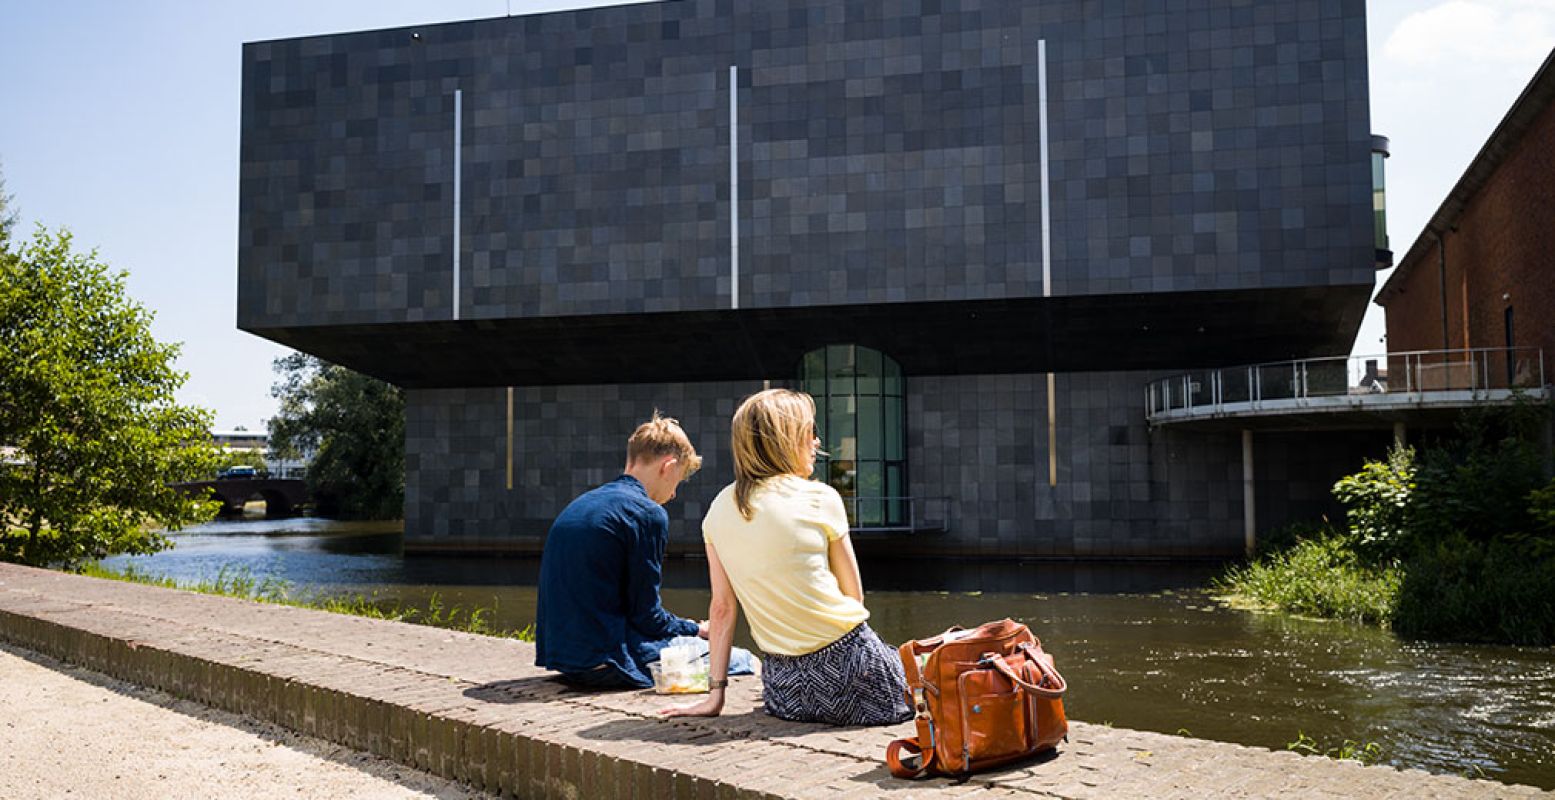 Het Van Abbemuseum in Eindhoven is één van de meest toonaangevende musea voor hedendaagse kunst in Europa. Foto: Bollmann/Van Abbemuseum